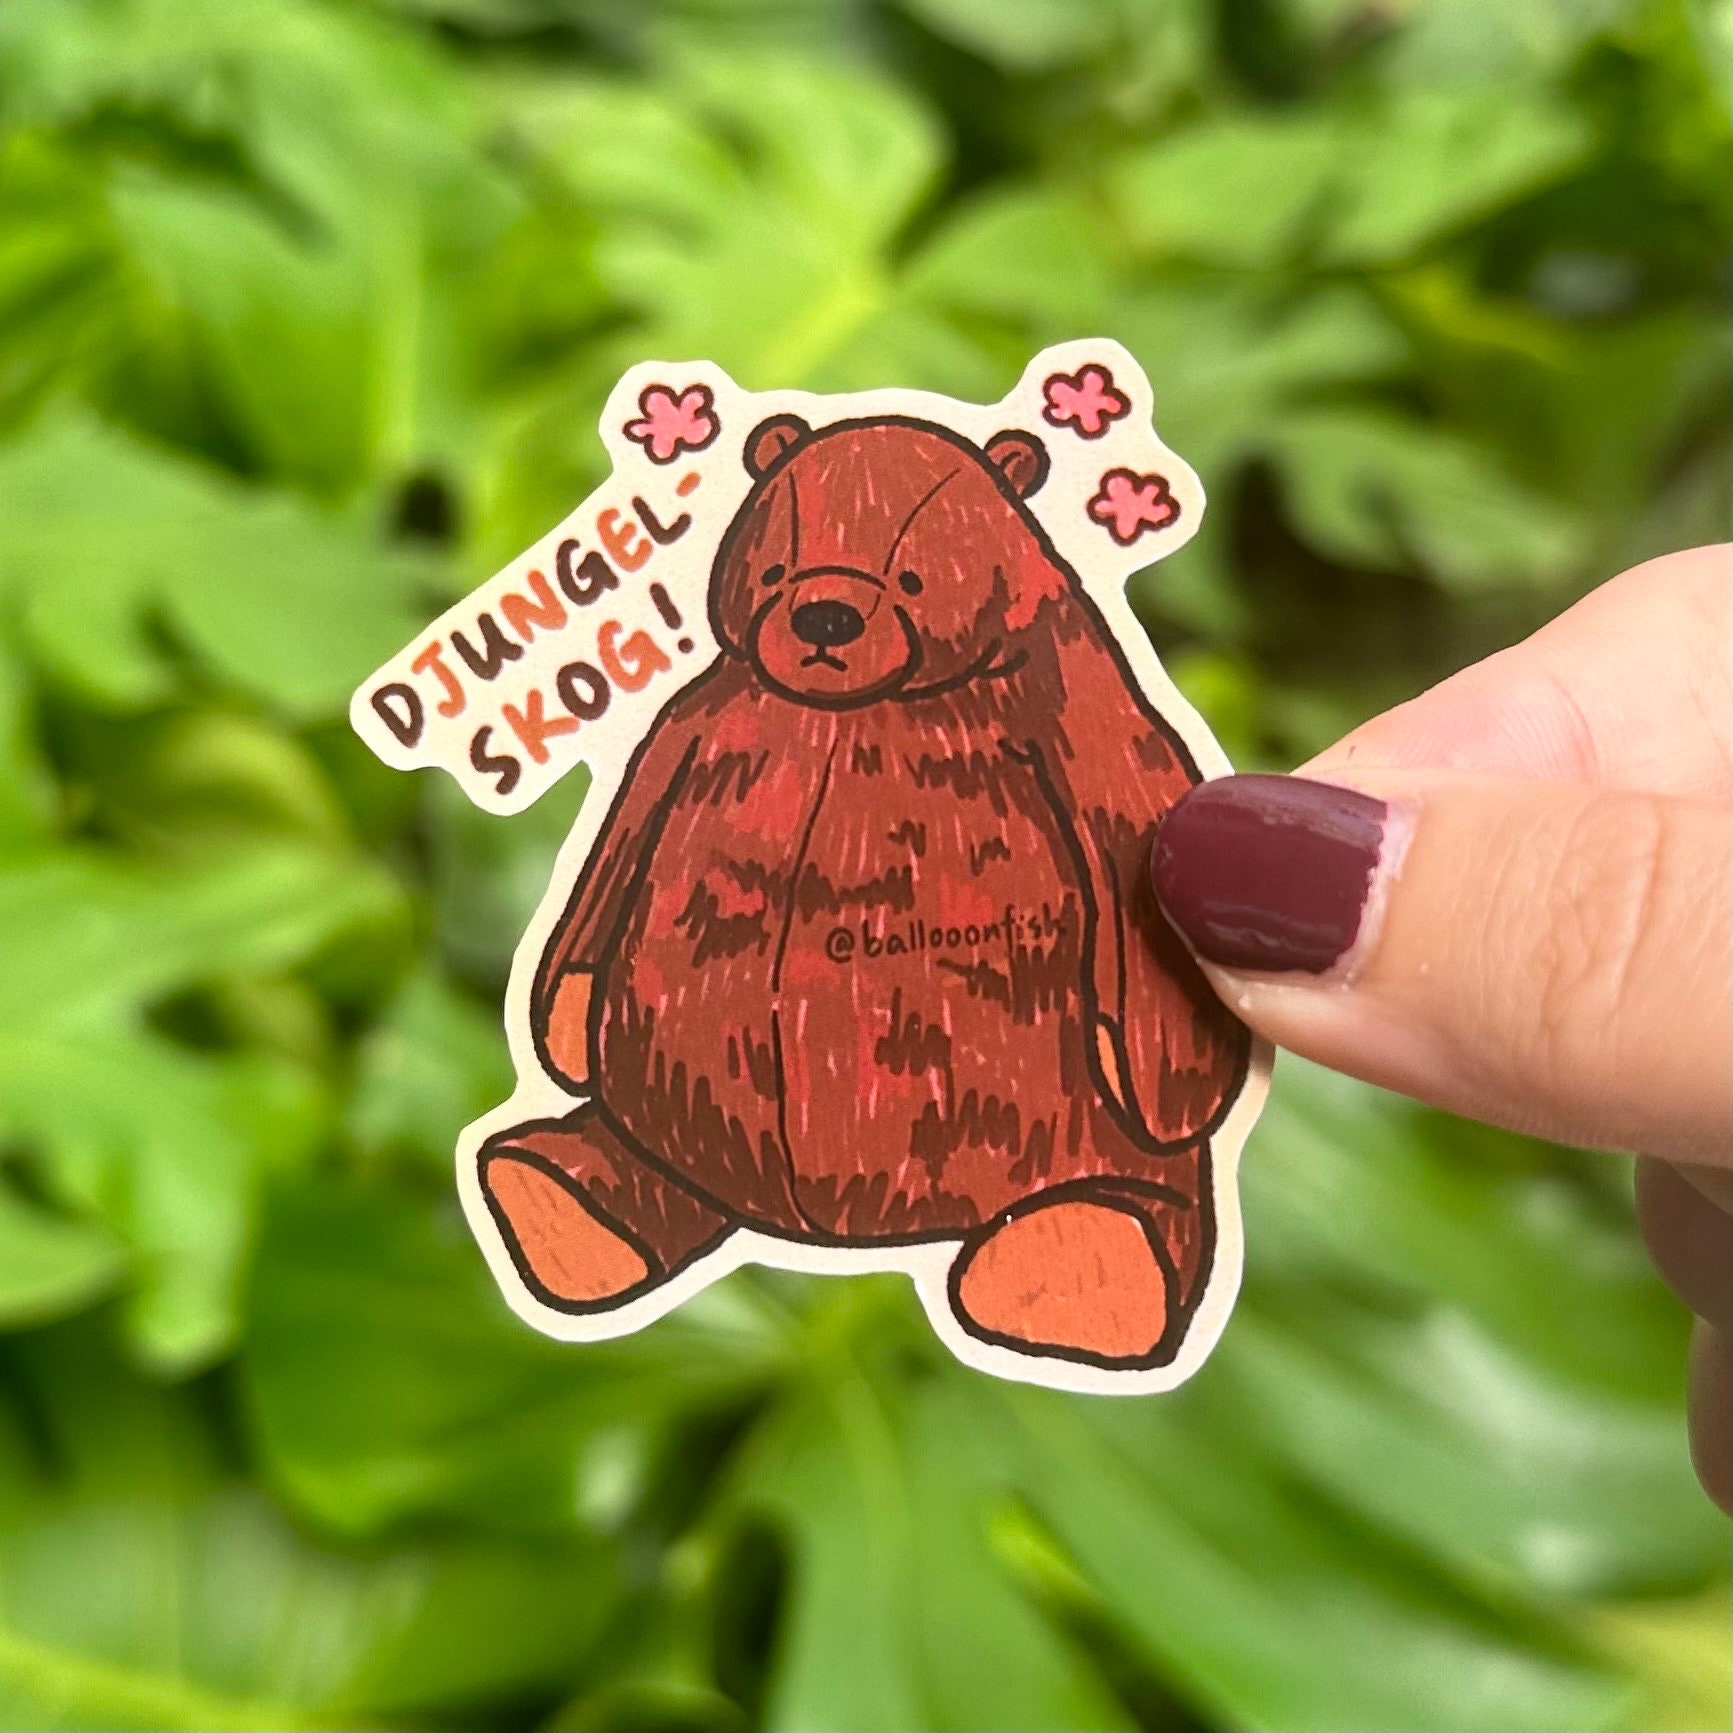 Halsin djungelskog bear Postcard for Sale by Snickersdoge